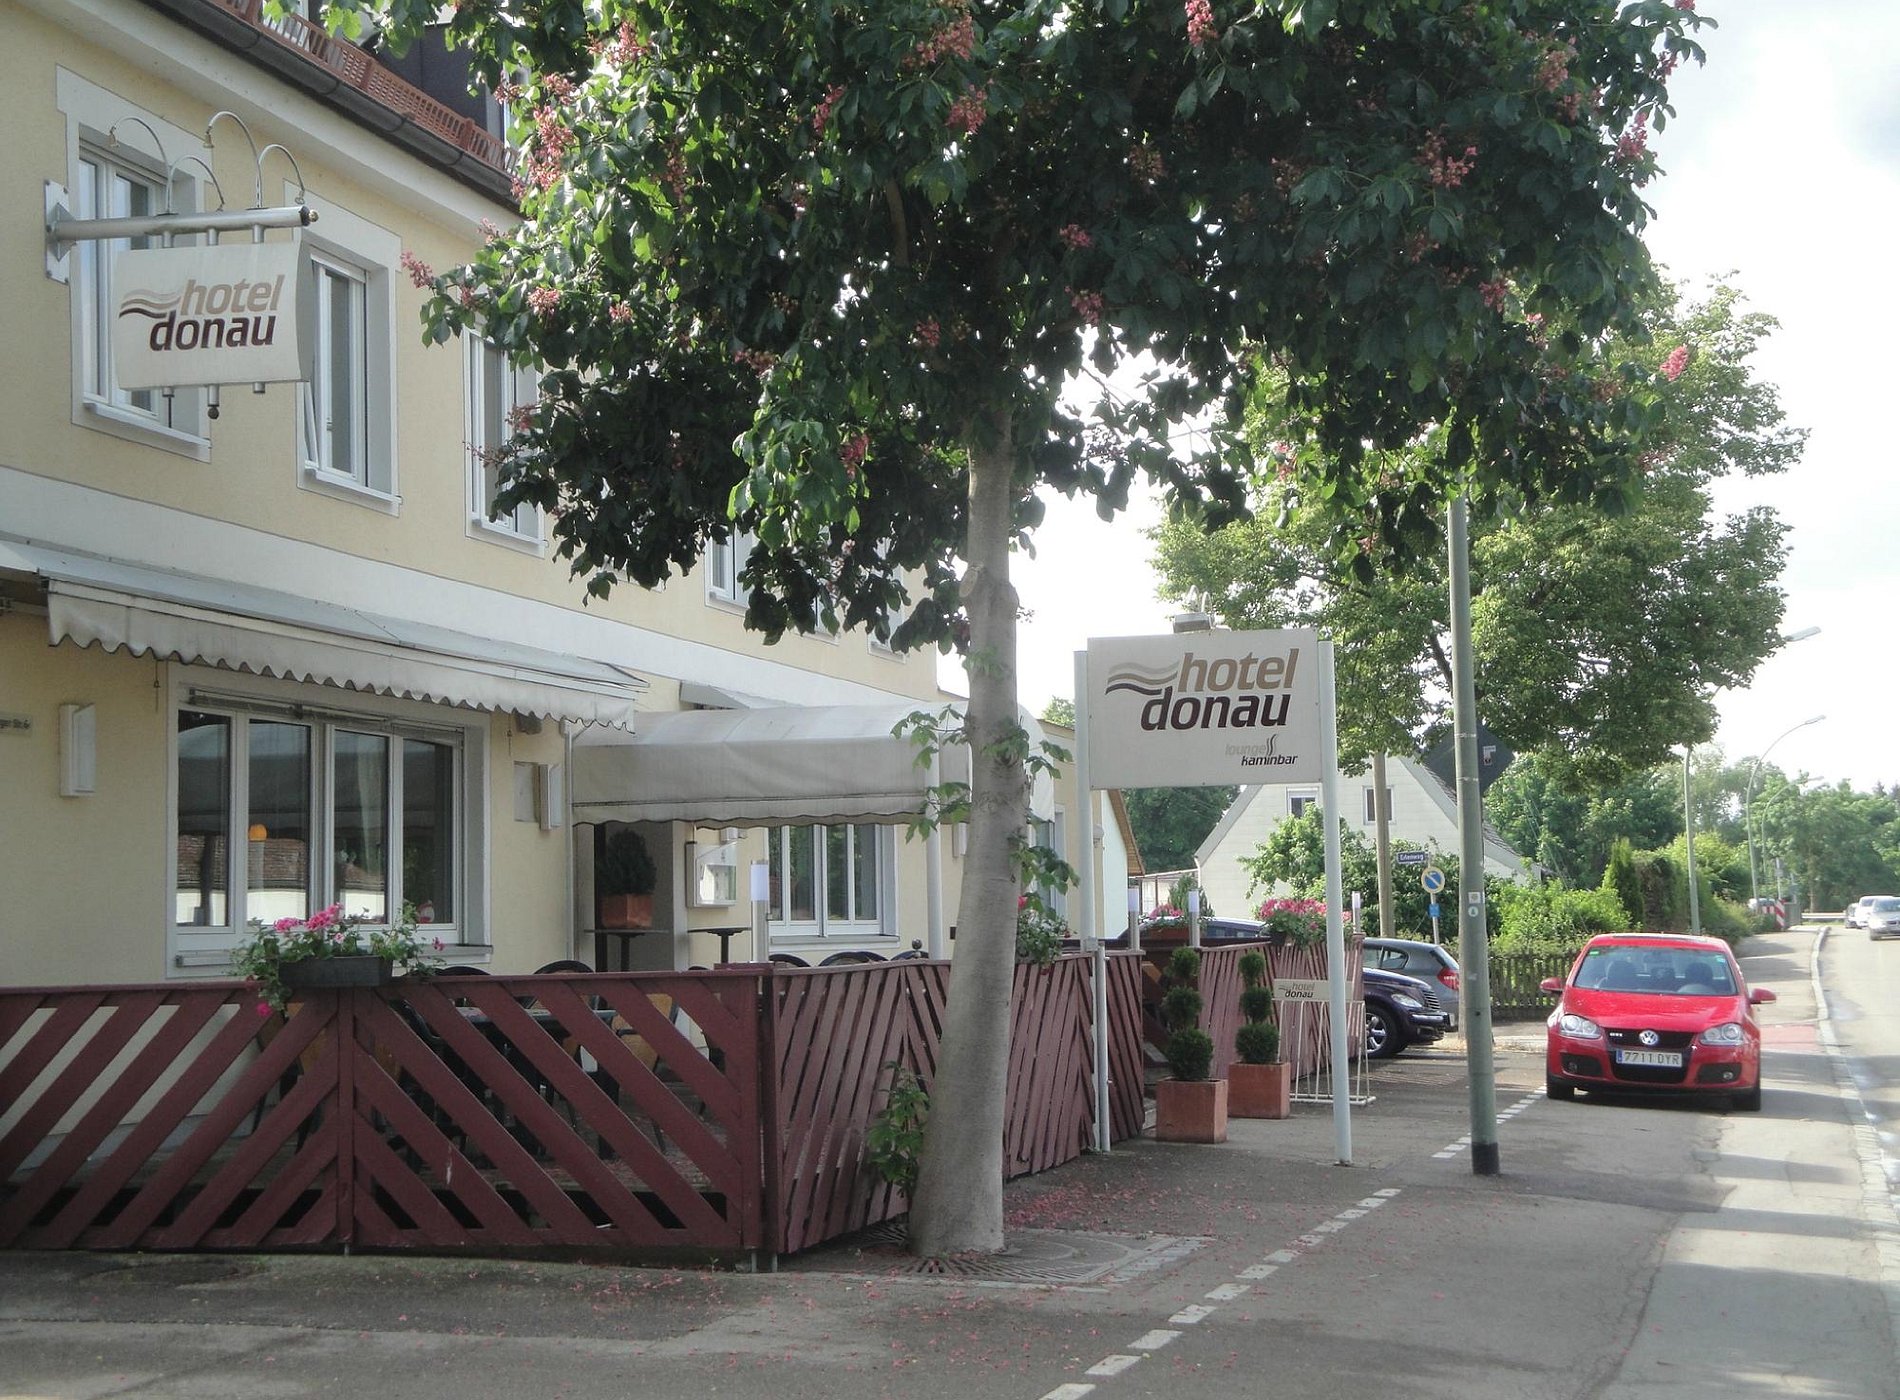 Hotel Donau image